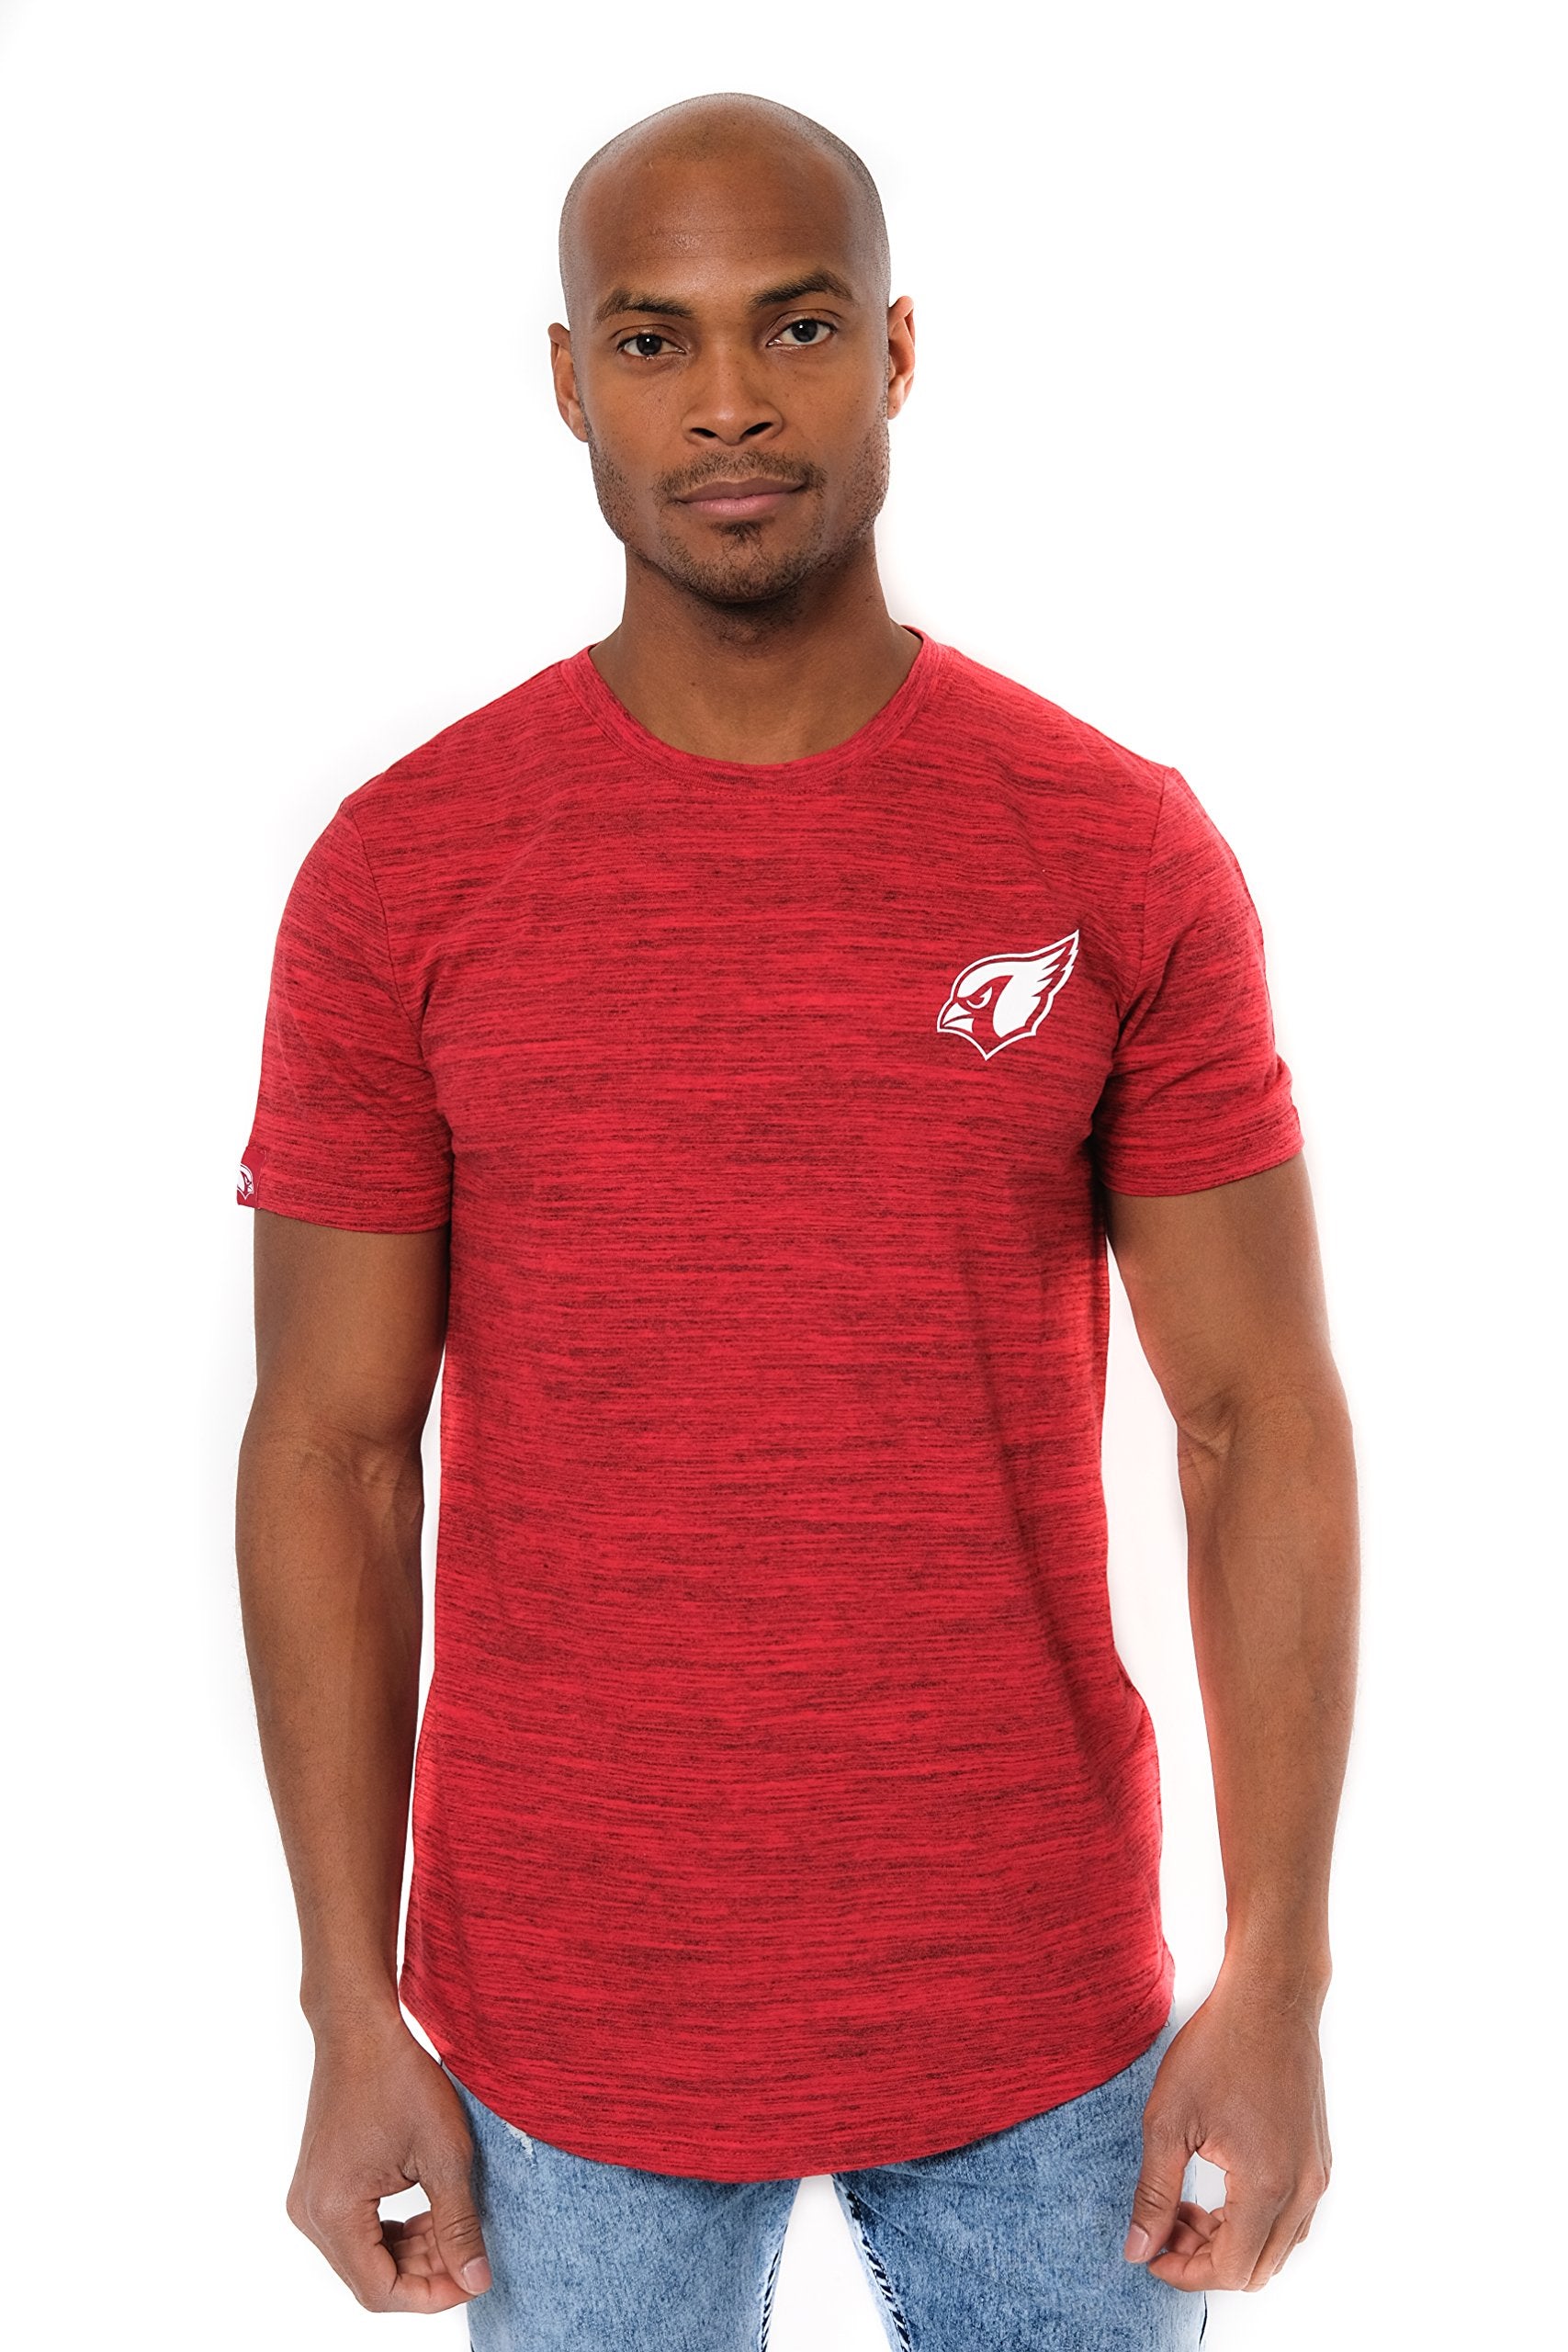 Ultra Game NFL Arizona Cardinals Mens Active Basic Space Dye Crew Neck Tee Shirt|Arizona Cardinals